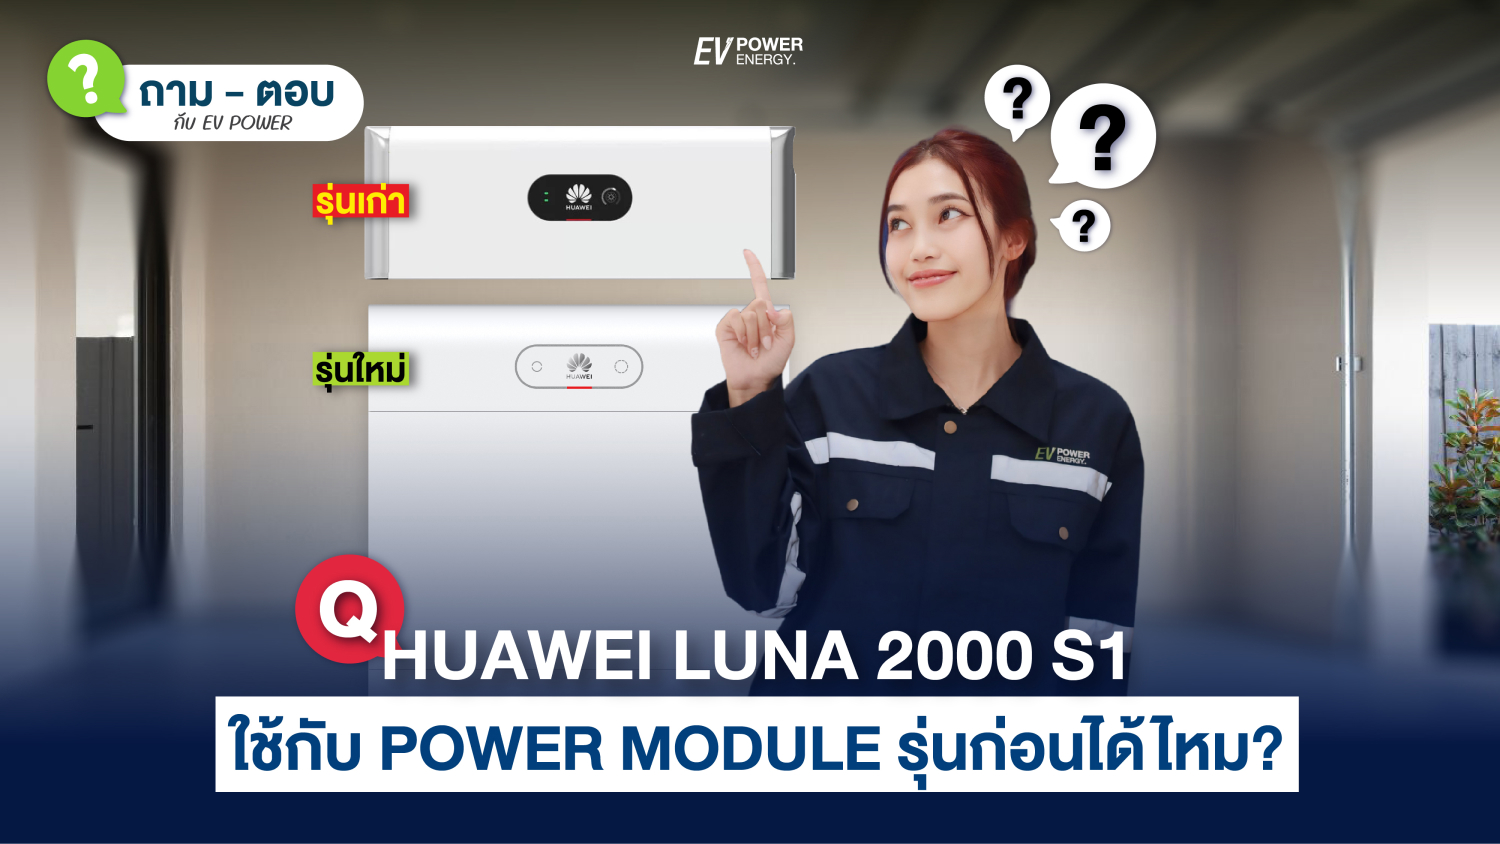 QA HUAWEI LUNA 2000 S1 สามารถใช้กับ Power Module รุ่นก่อนได้หรือไม่